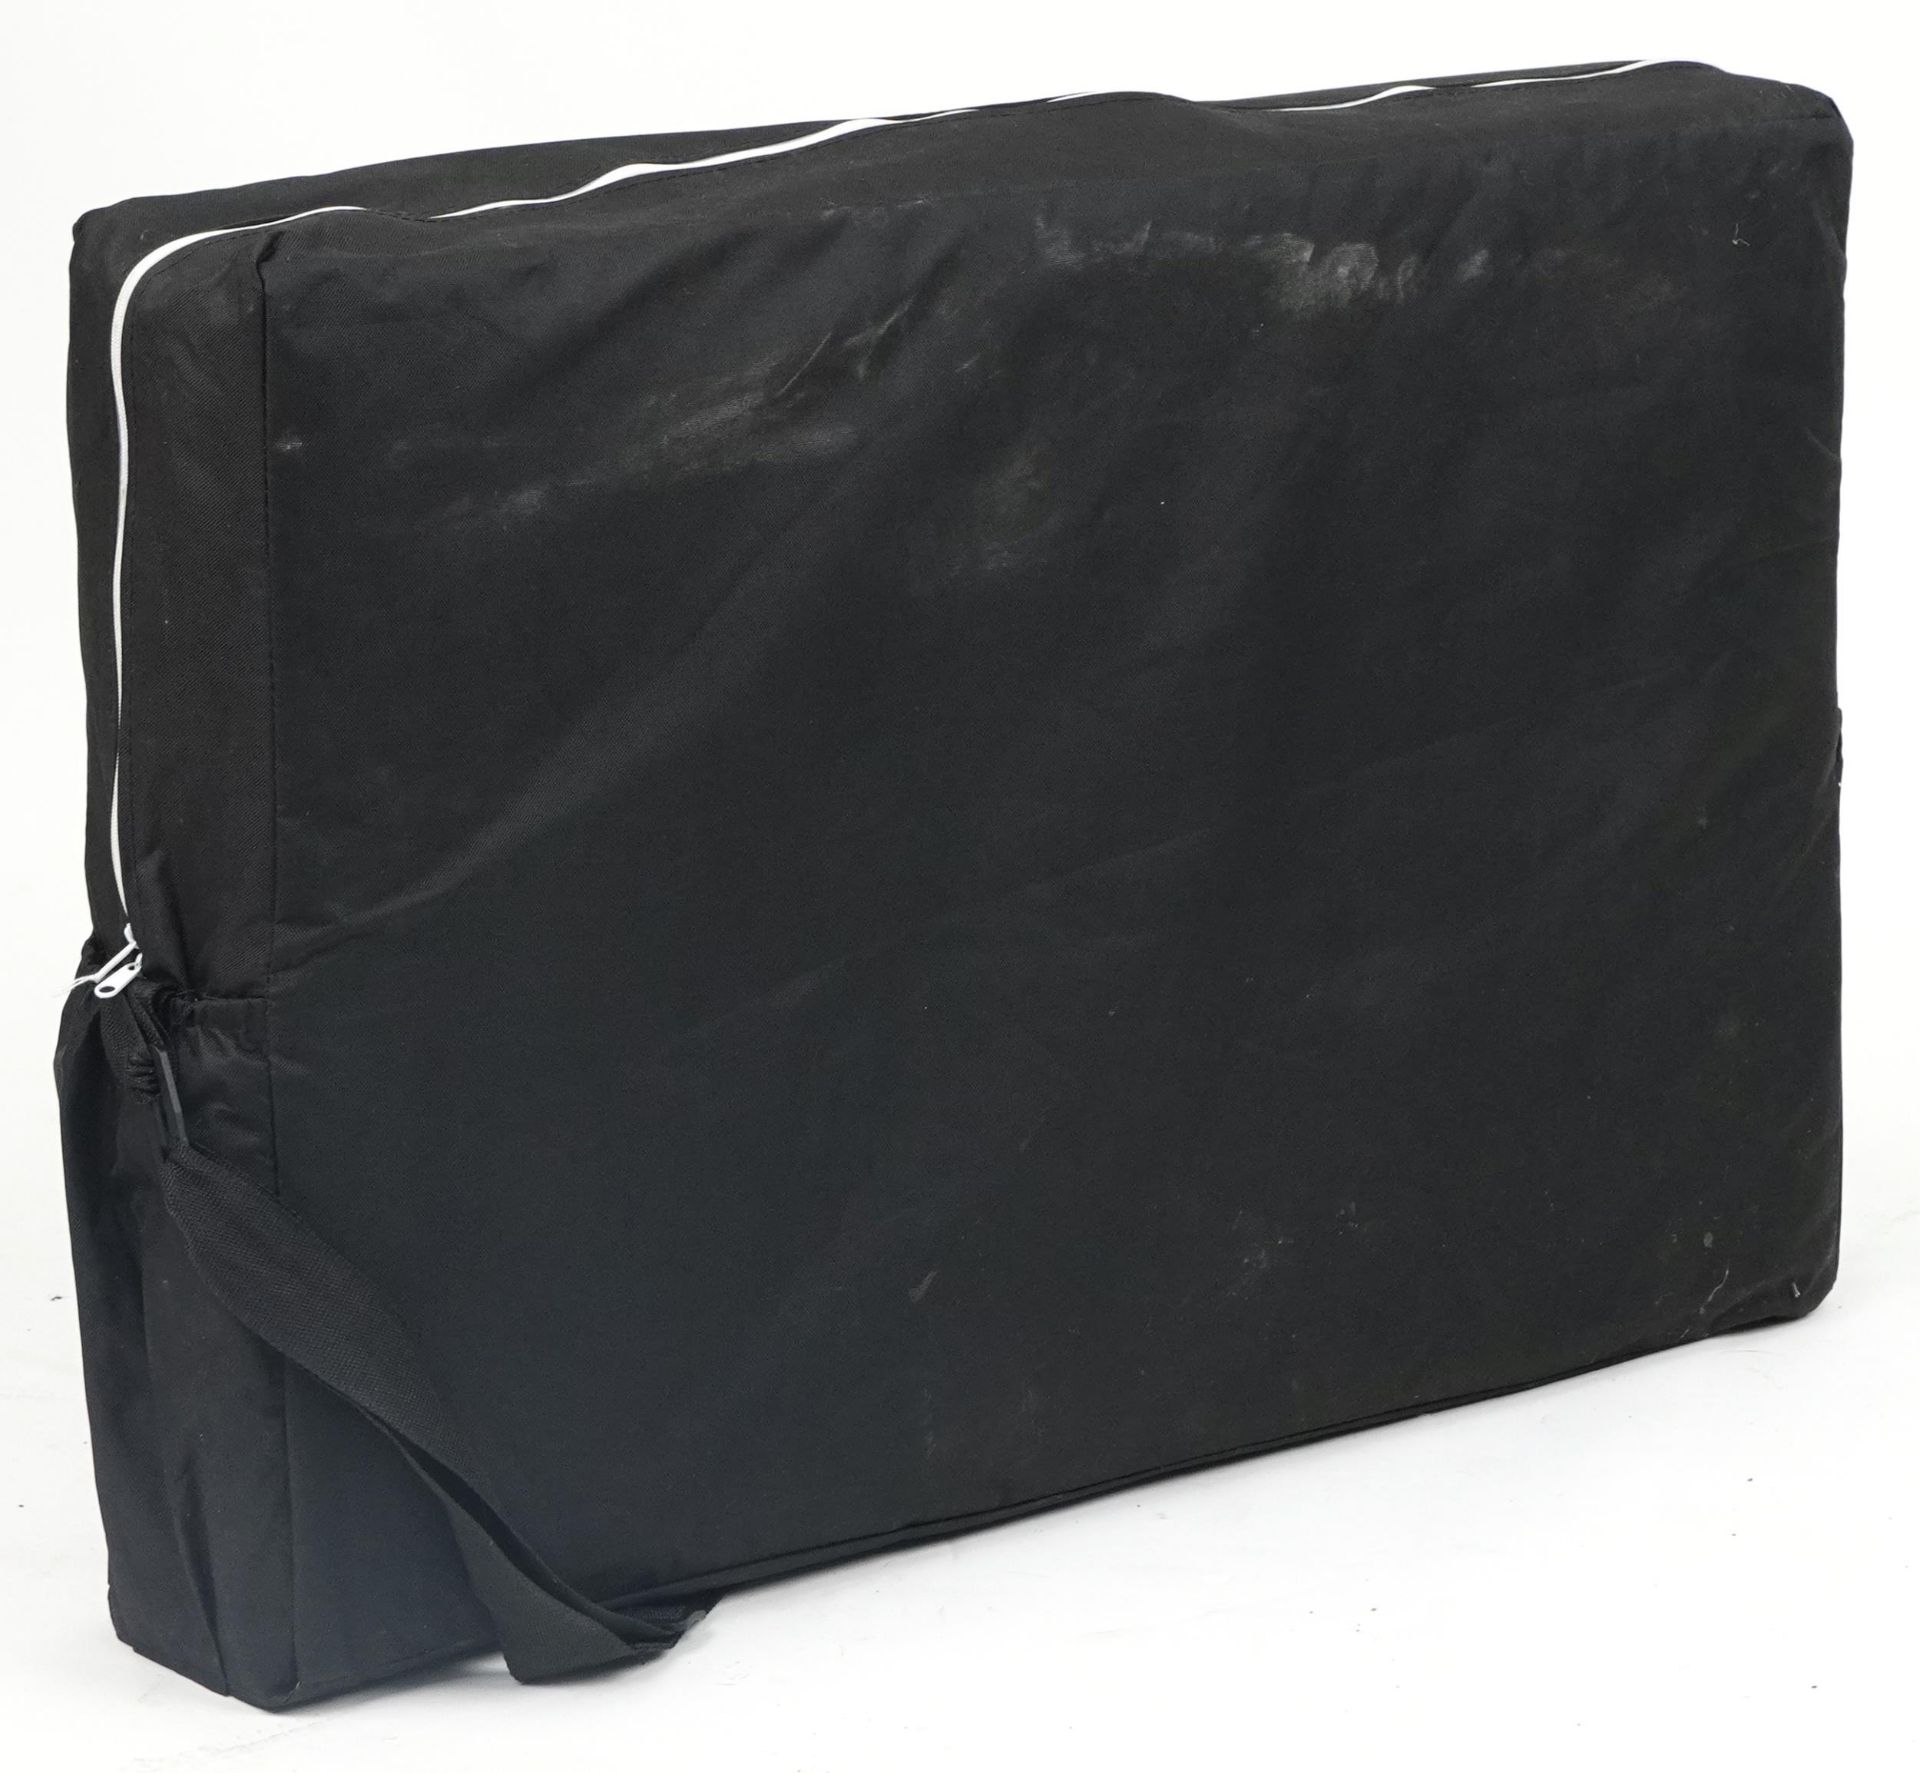 Folding aluminium and black leatherette massage table with protective bag, 83cm H x 184cm W x 59cm D - Bild 6 aus 6